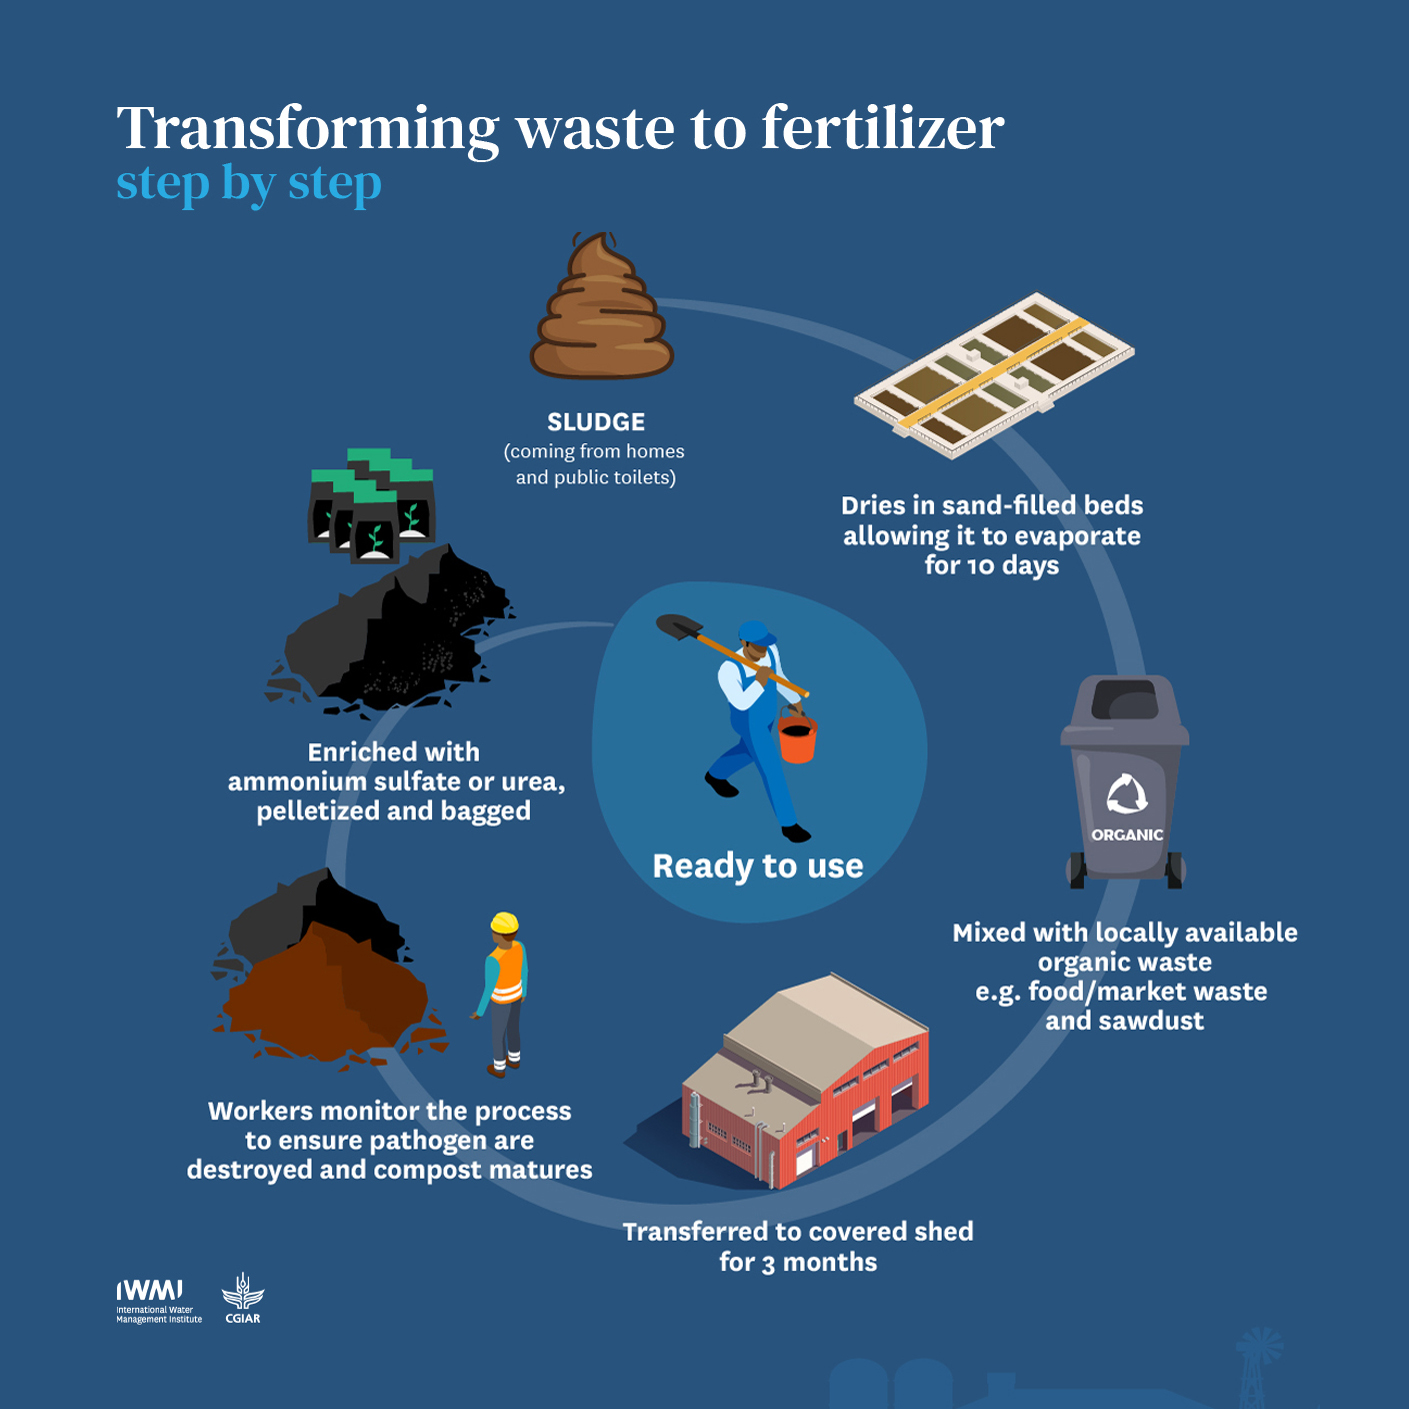 Transforming waste to fertilizer